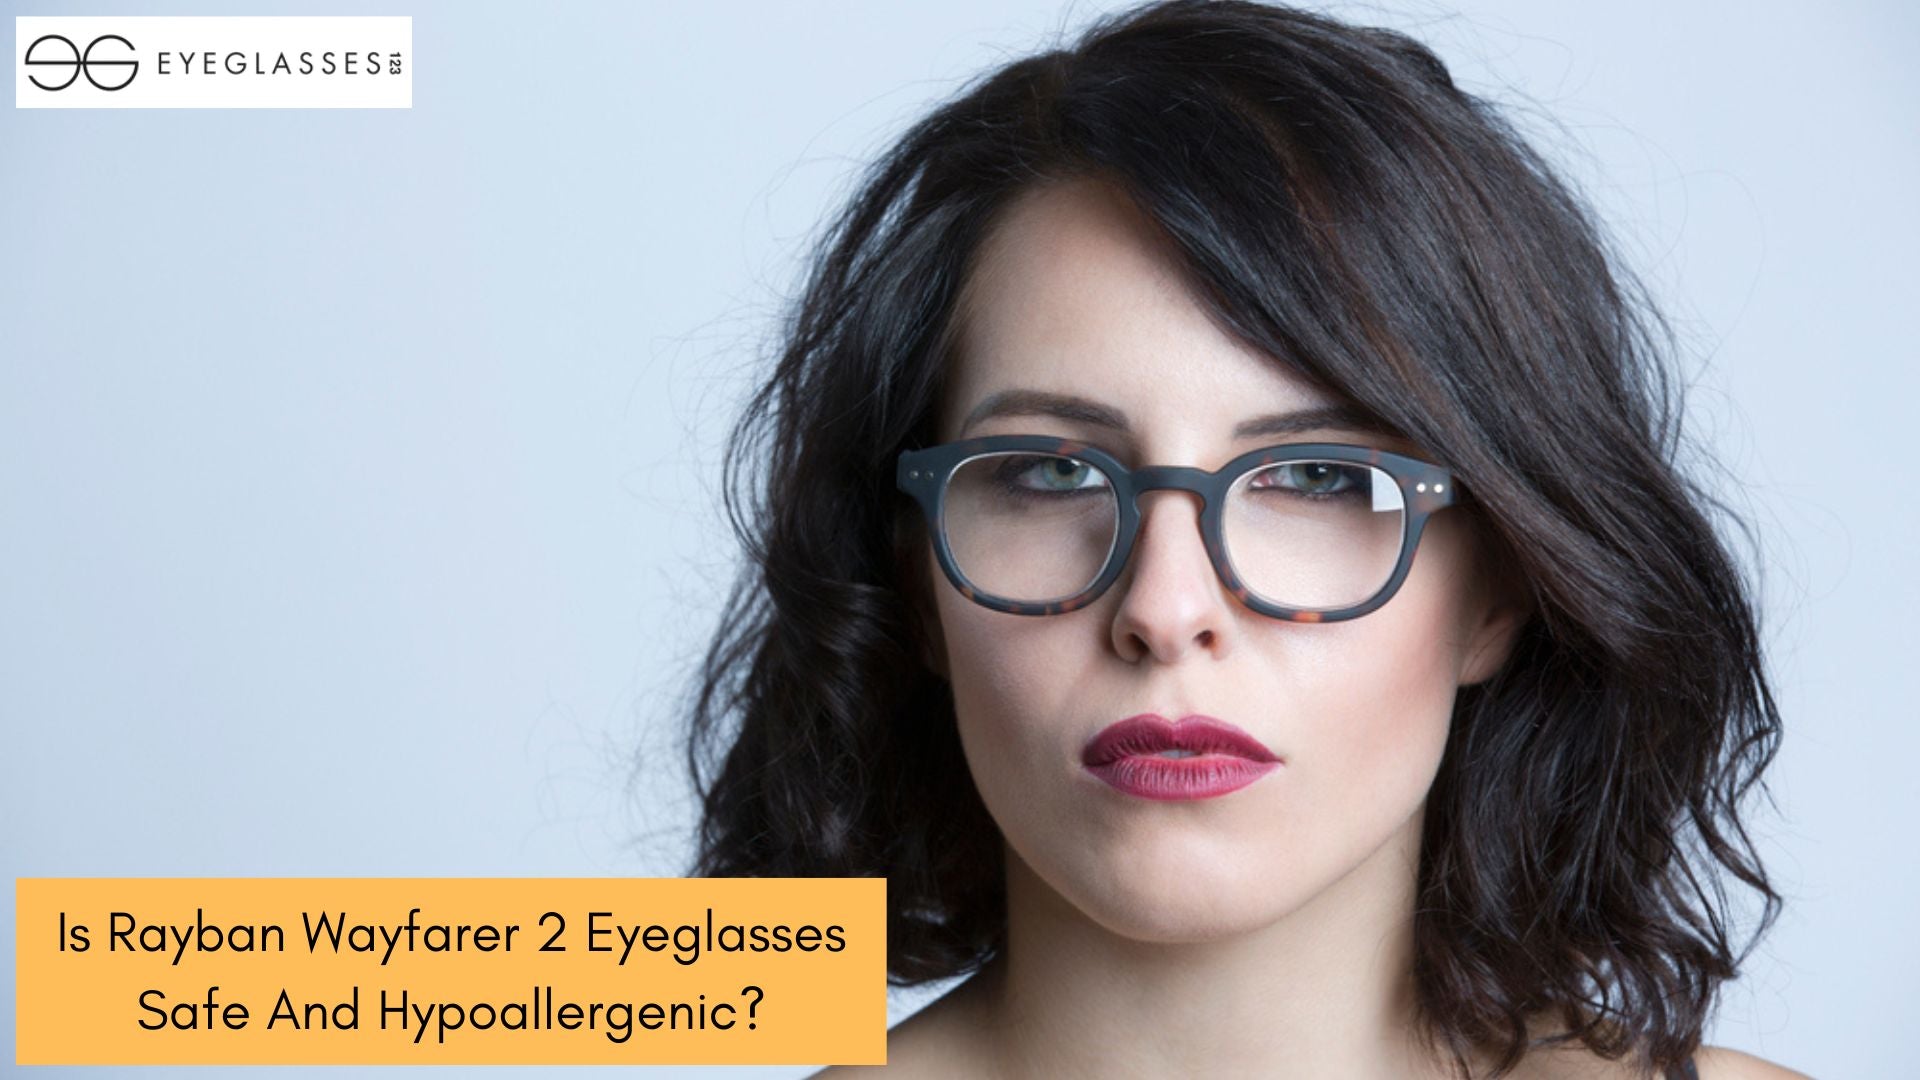 Is Rayban Wayfarer 2 Eyeglasses Safe And Hypoallergenic?